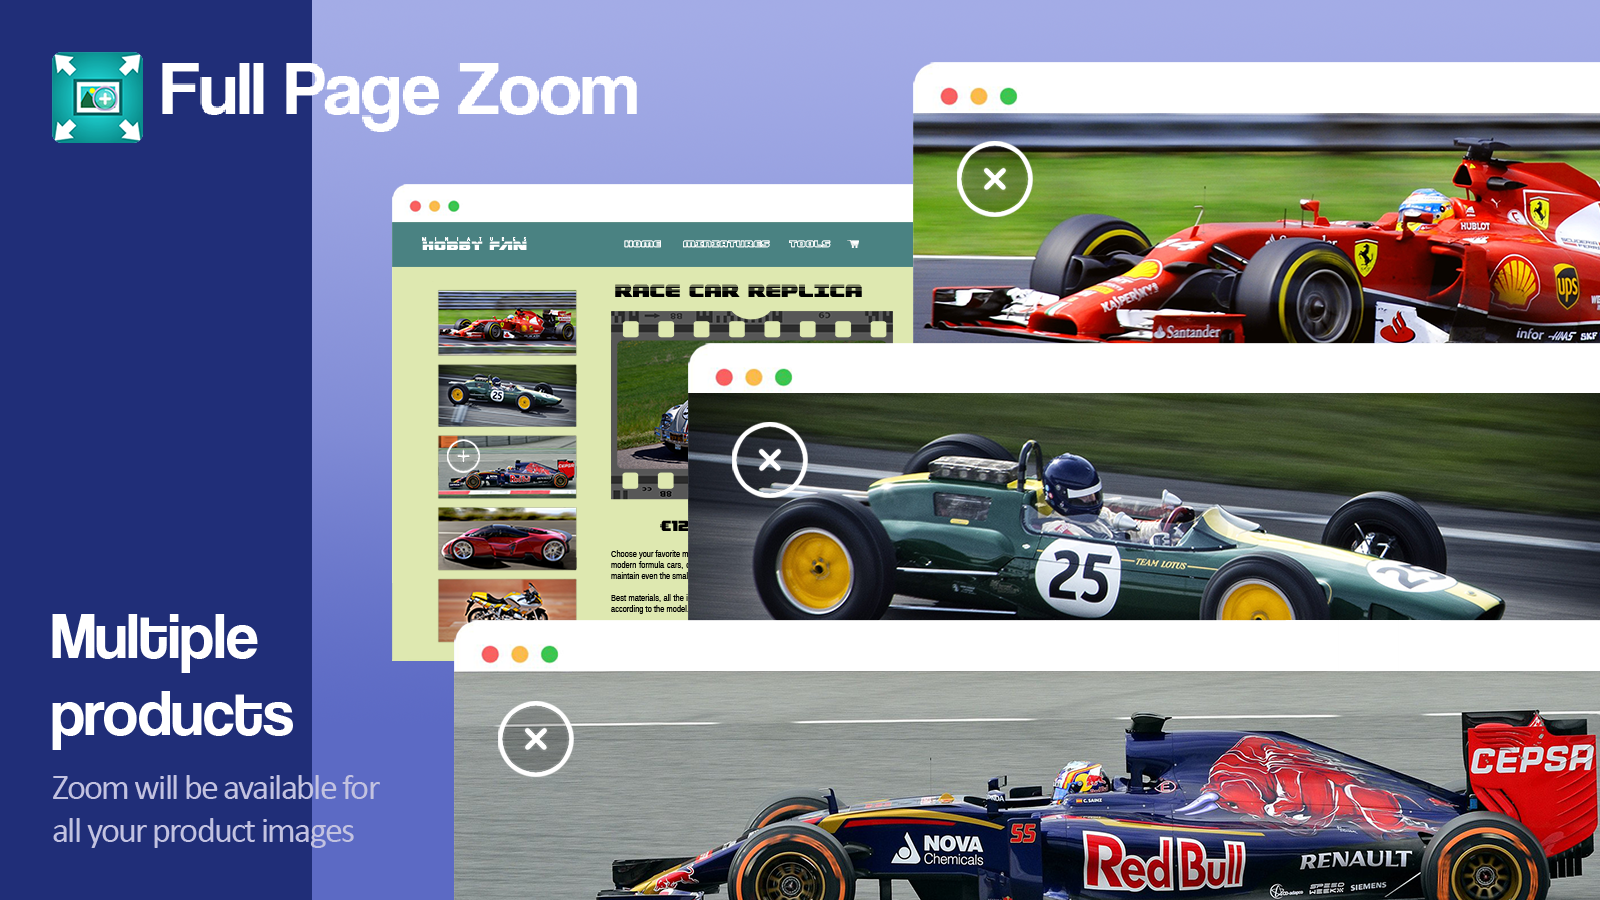 Zoom zal beschikbaar zijn voor al uw productafbeeldingen